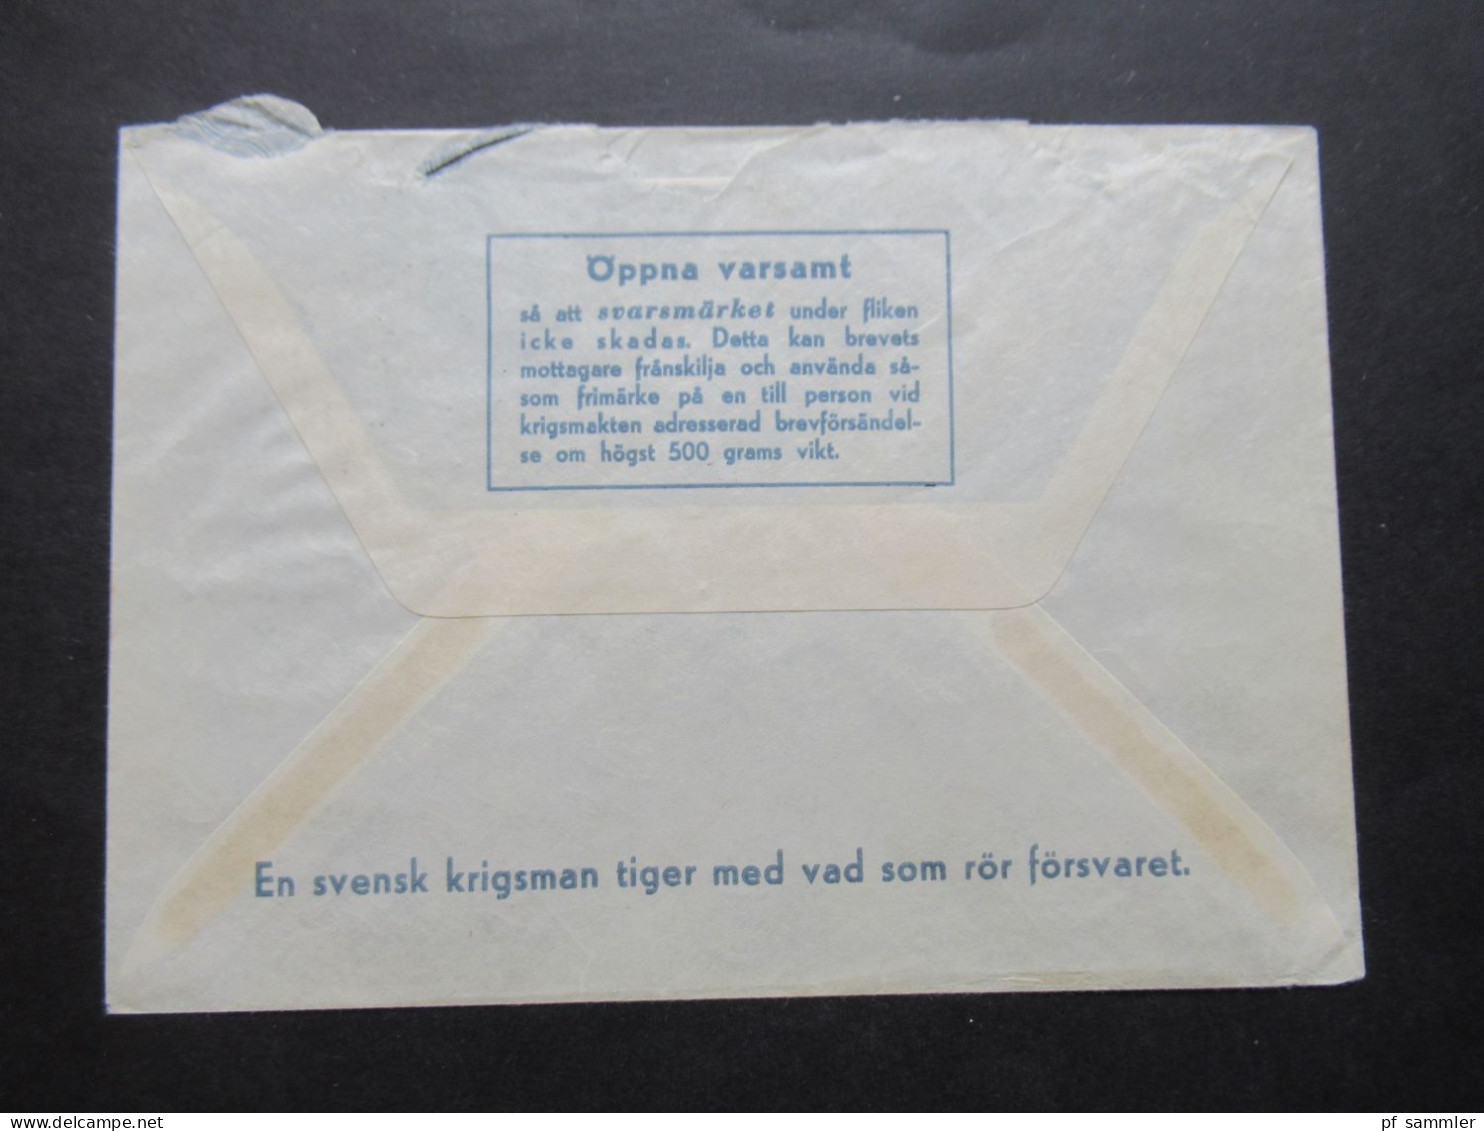 1966 Schweden Militärpost Militärbrev Stempel Svenska FN Bat Cypern / Schwedisches Militär Auf Zypern / FN Bat STR Komp - Militares